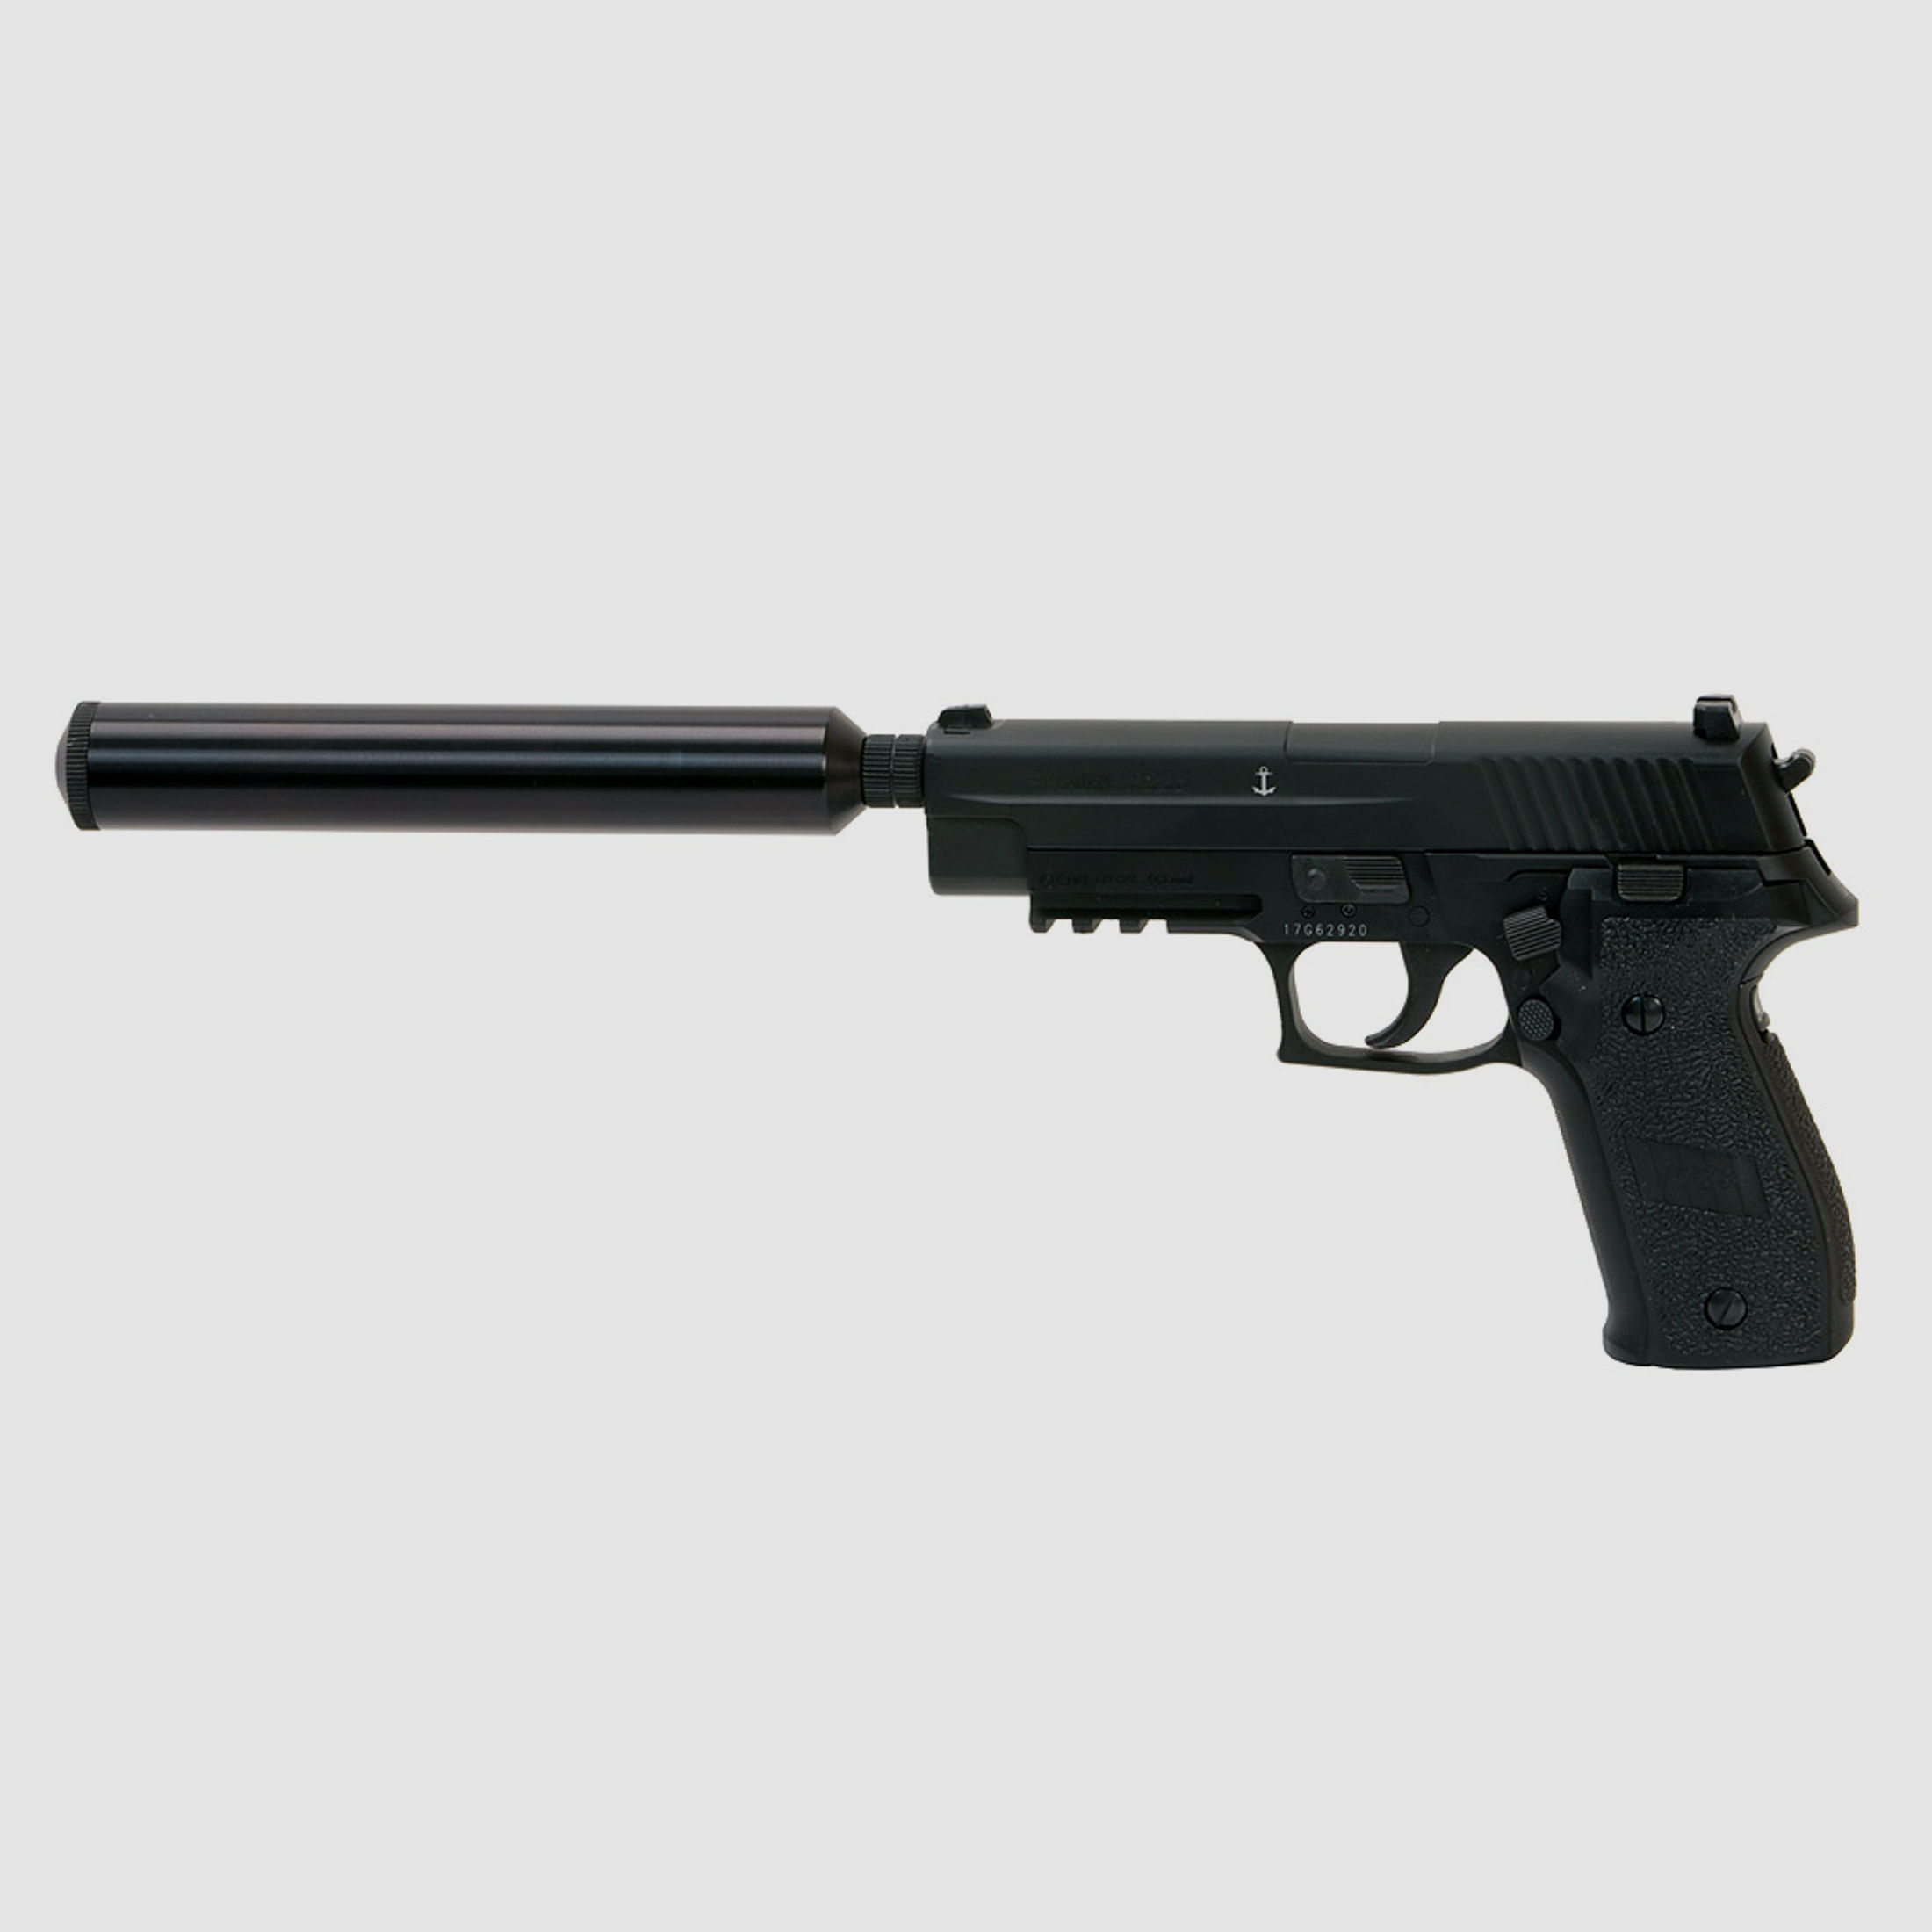 SchalldĂ¤mpferadapter fĂĽr CO2 Pistolen Sig Sauer P226, Kaliber 4,5 mm Diabolo